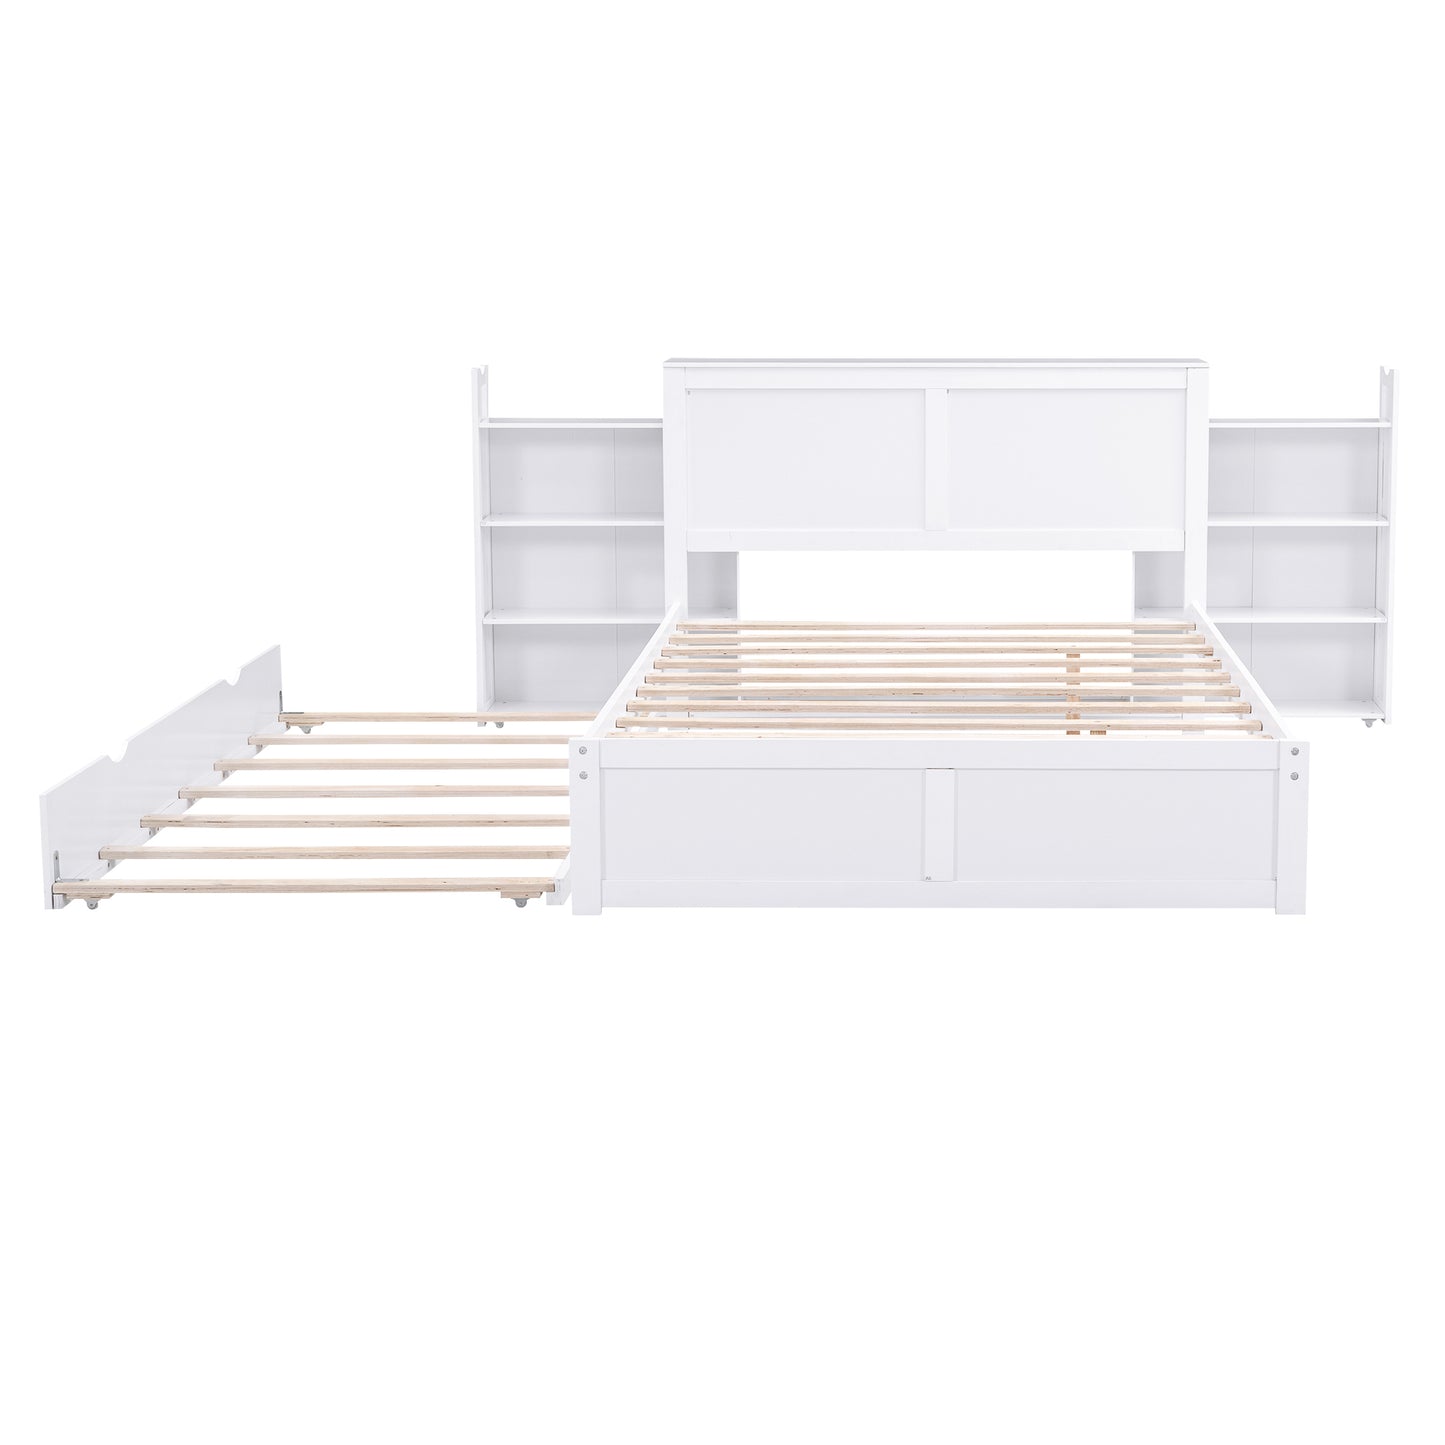 Lit plateforme de rangement pleine grandeur avec étagères coulissantes et lit gigogne double, blanc